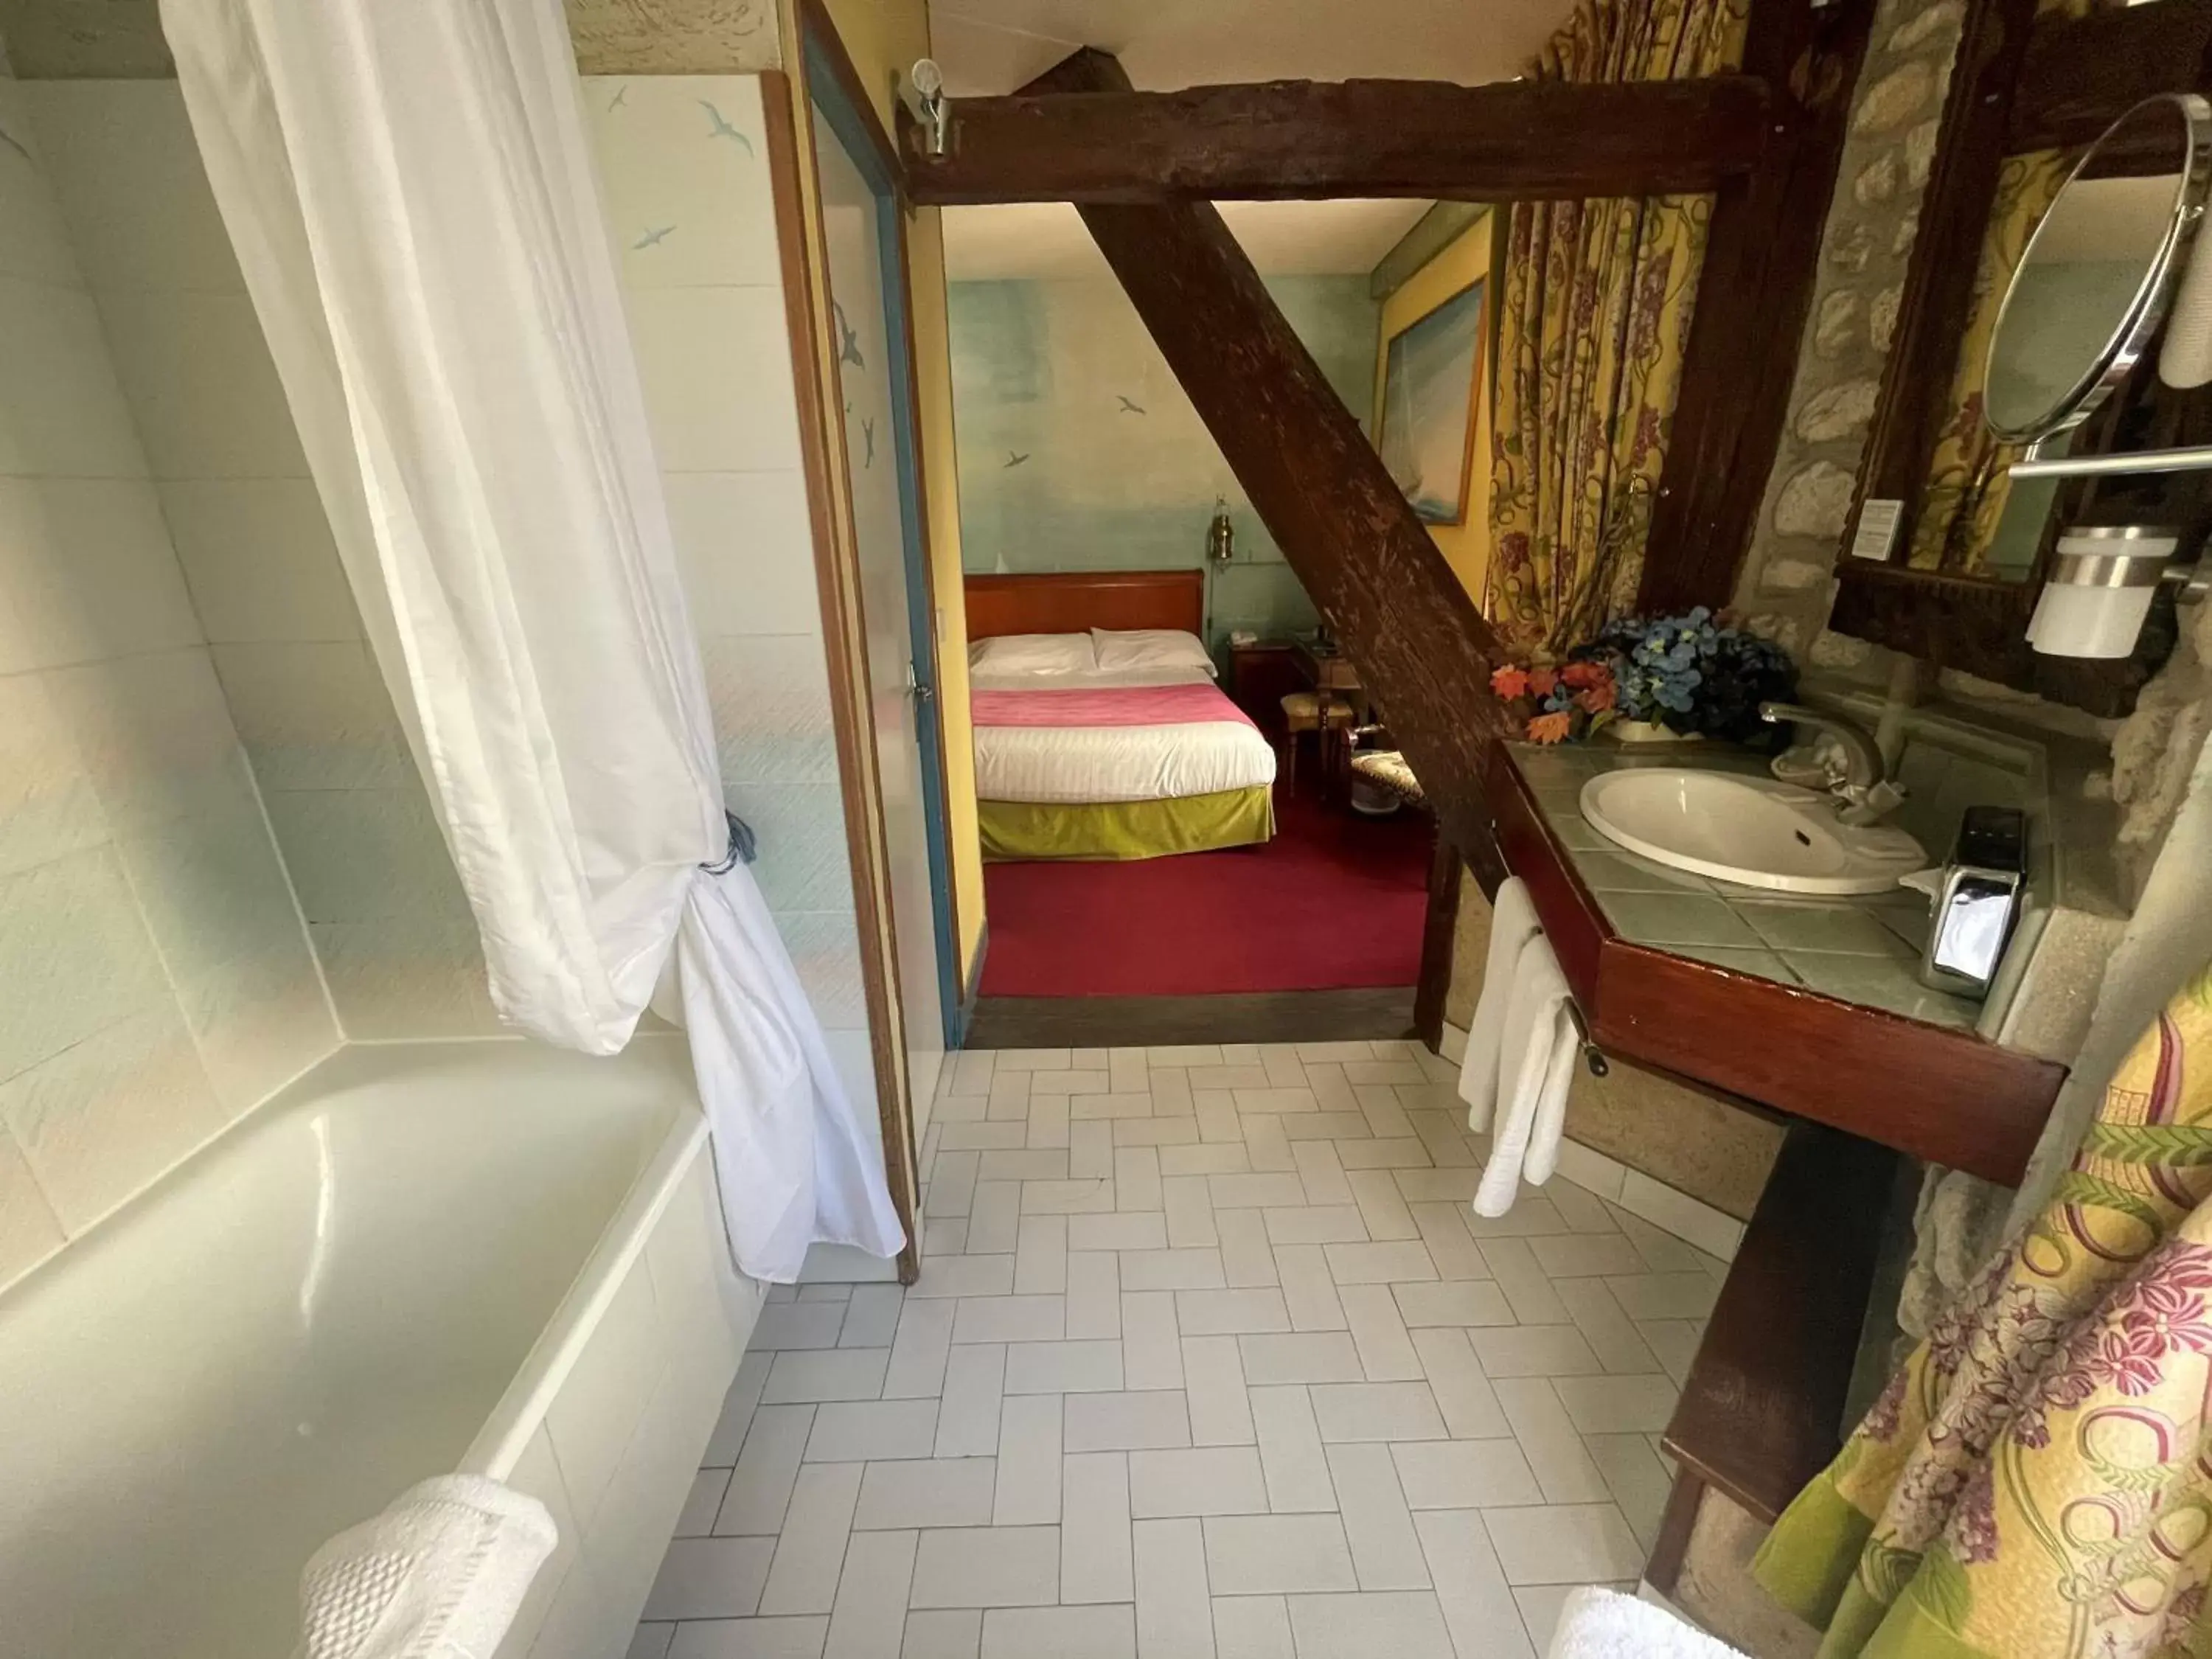 Photo of the whole room, Bathroom in Grand Hôtel Dechampaigne